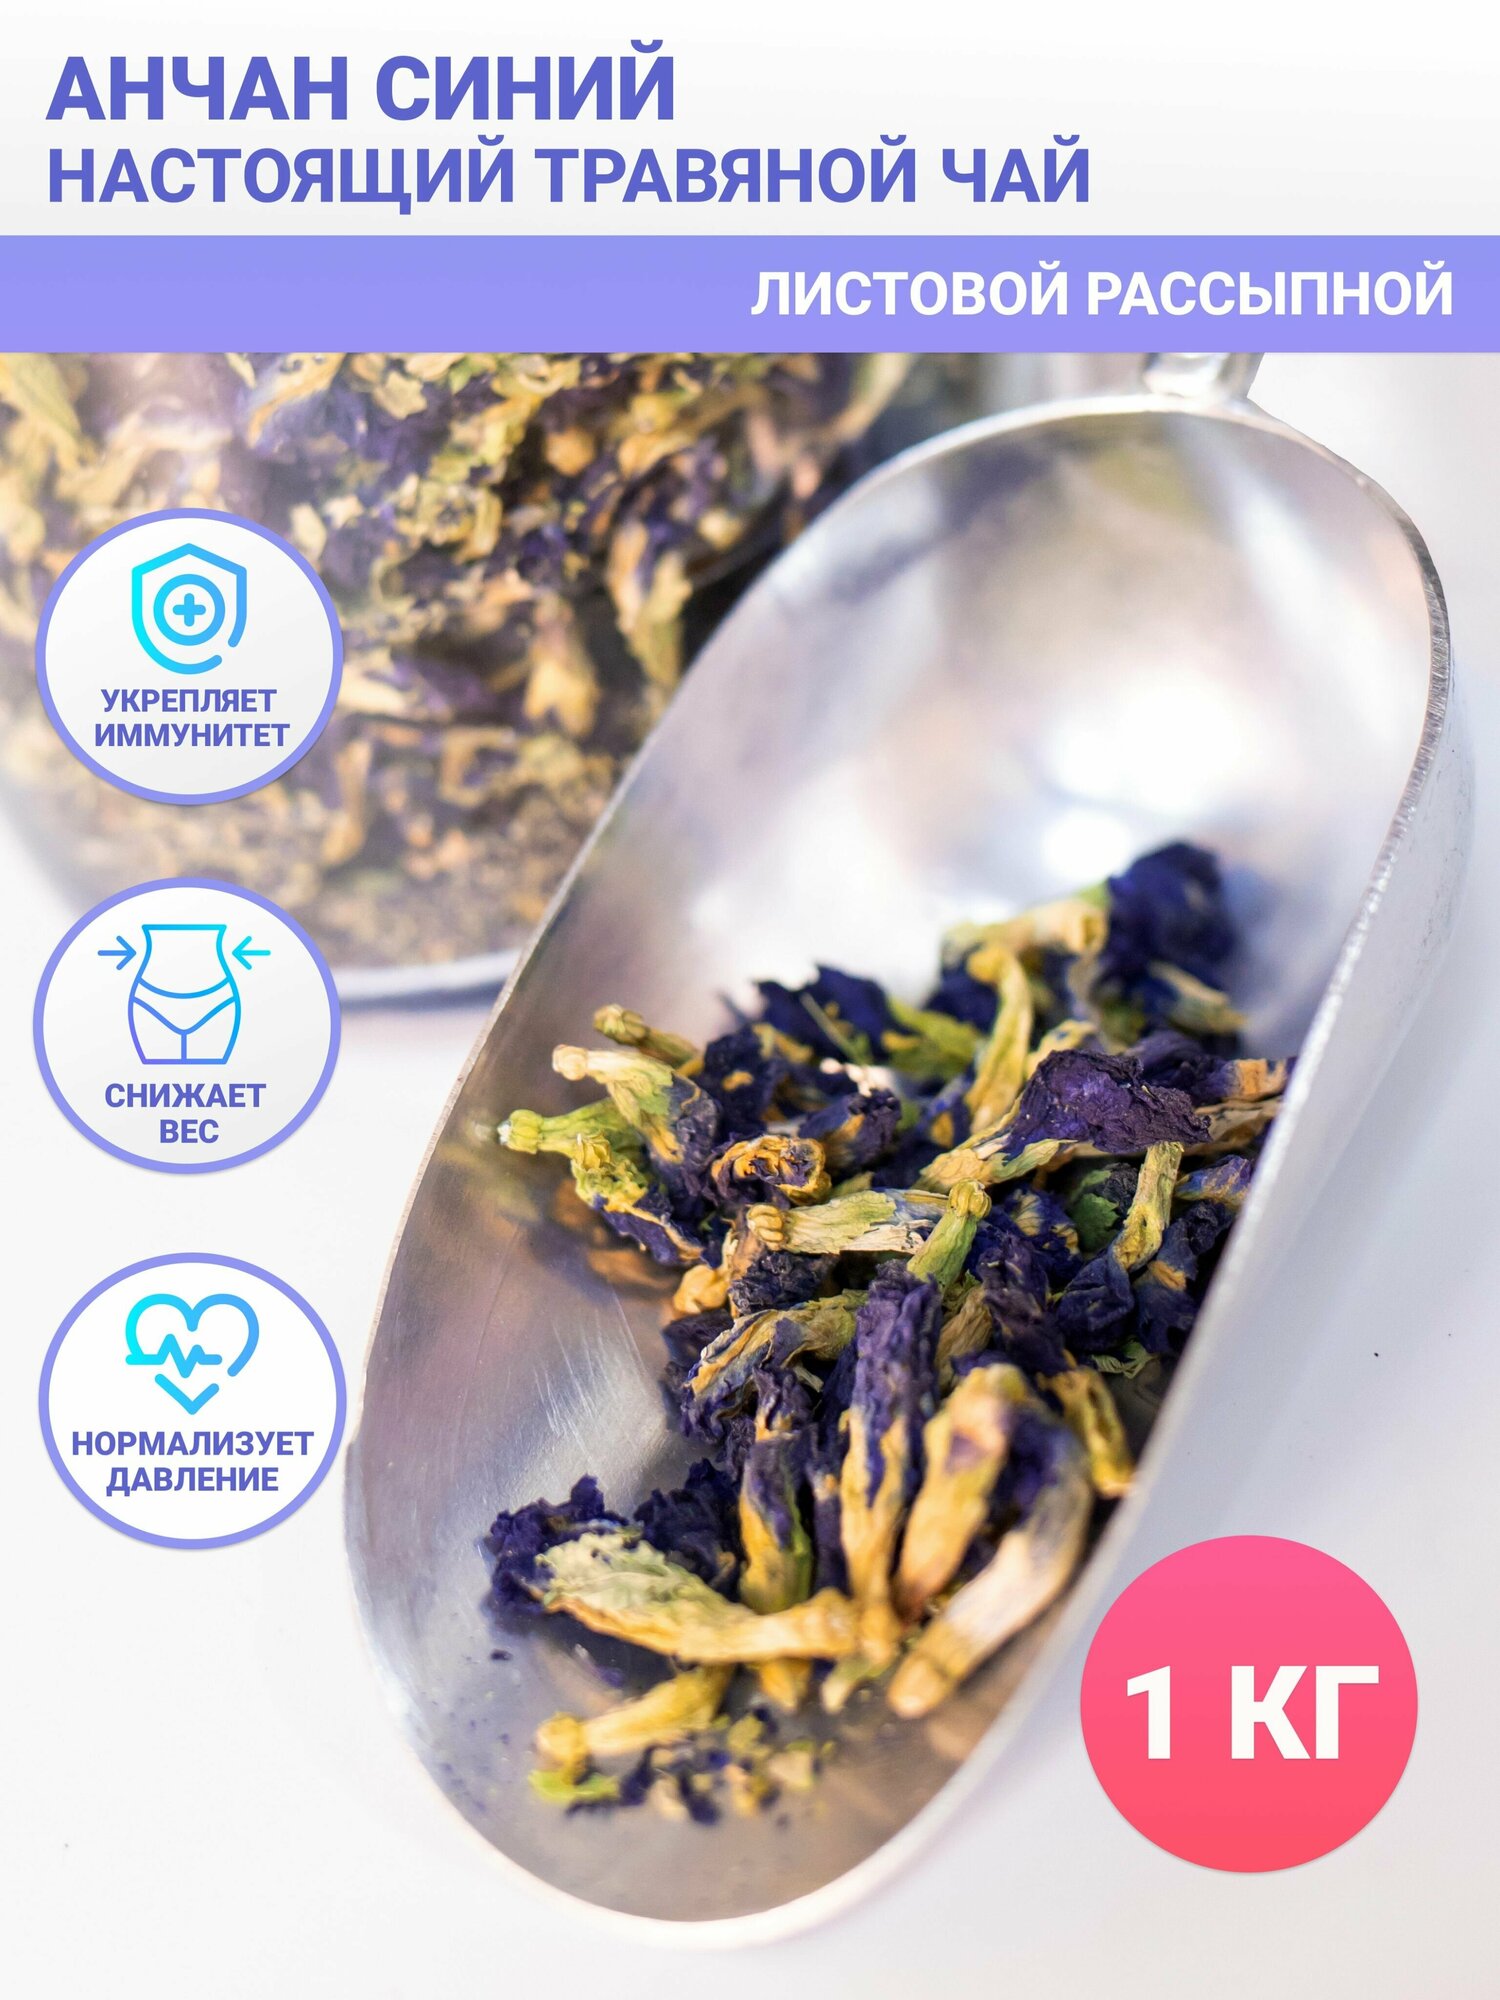 Настоящий Травяной чай Анчан Синий Листовой Рассыпной, 1 кг